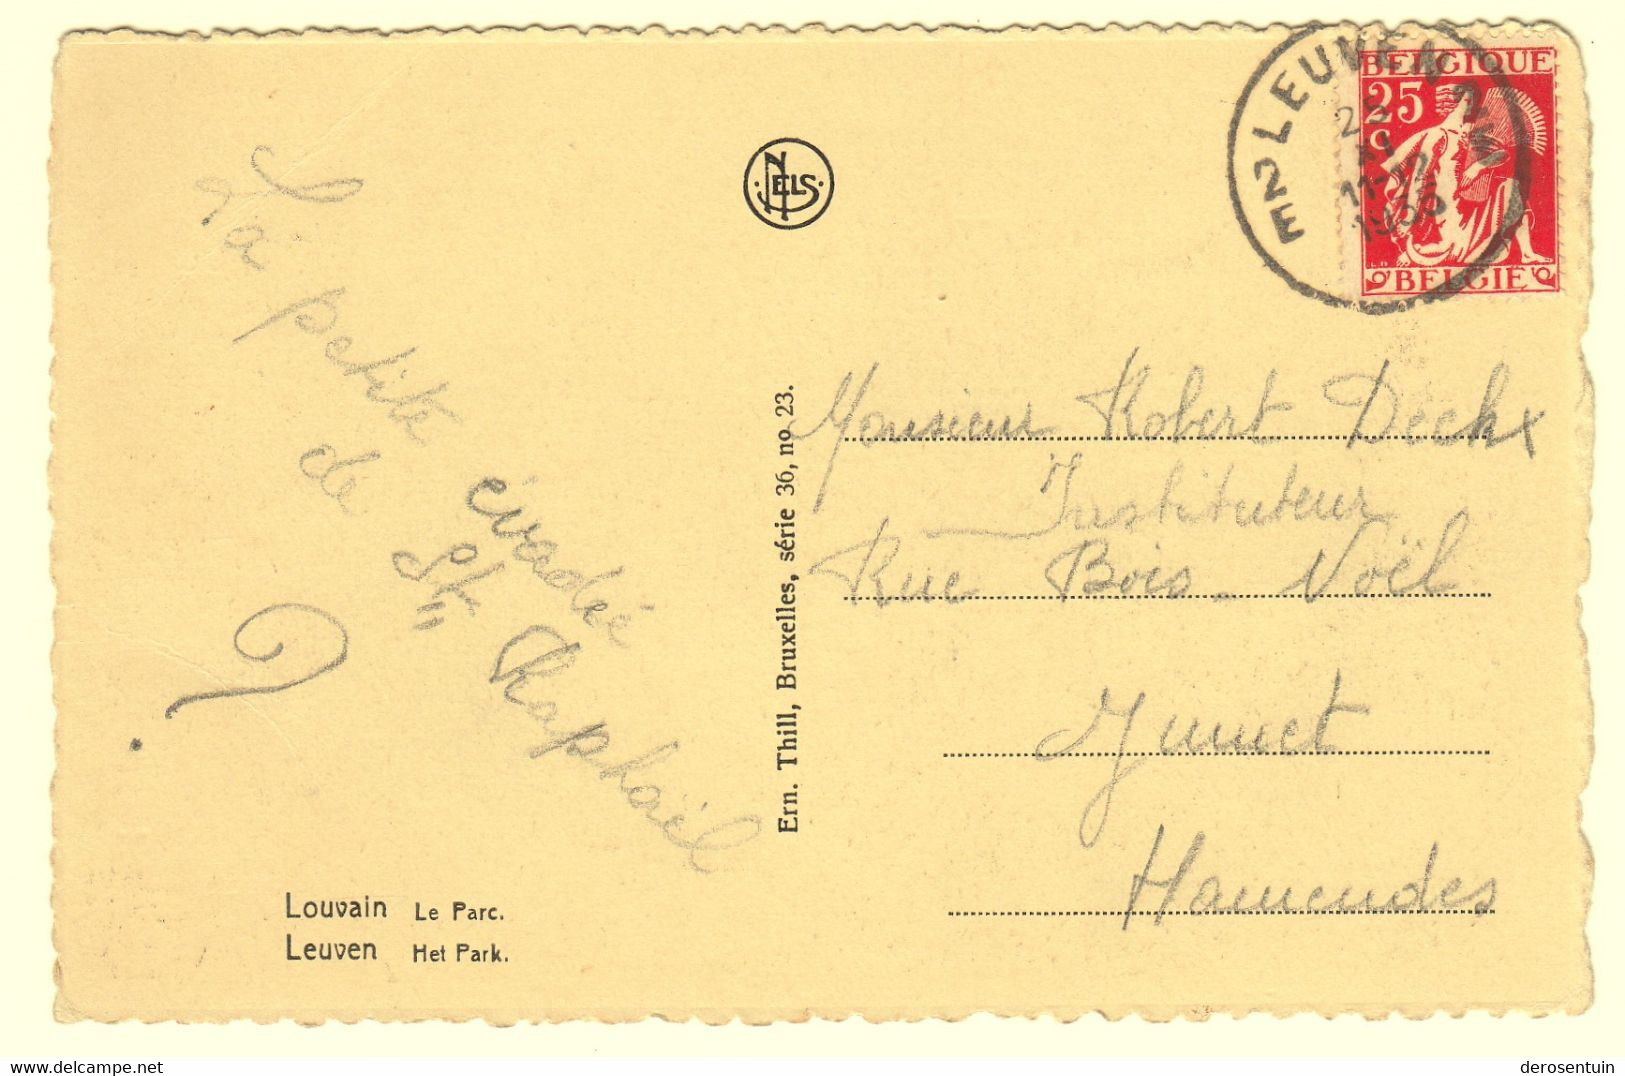 a0004	[Postkaarten] Leuven / Heverlee (gevarieerd lot). - Lot van 70 postkaarten (waarvan 49 r/v gescand), klein formaat